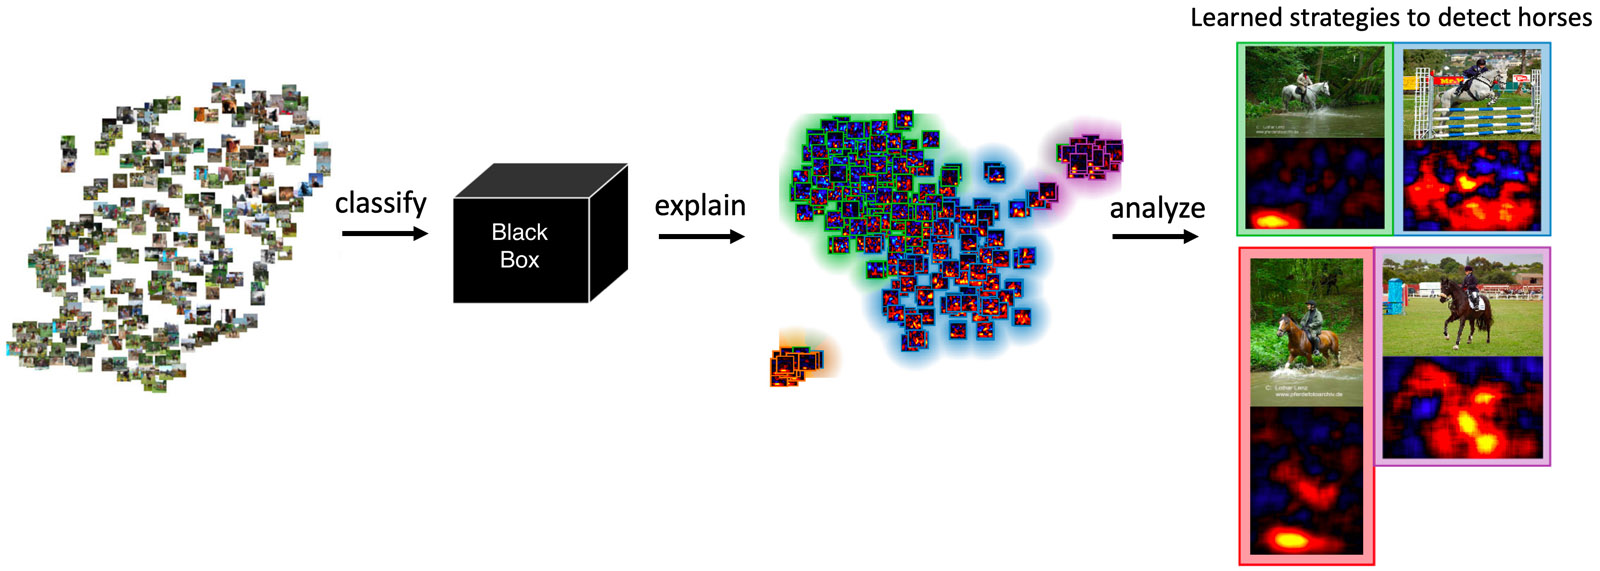 Layer-wise Relevance Propagation ermöglicht den Blick in die »Black Box«.